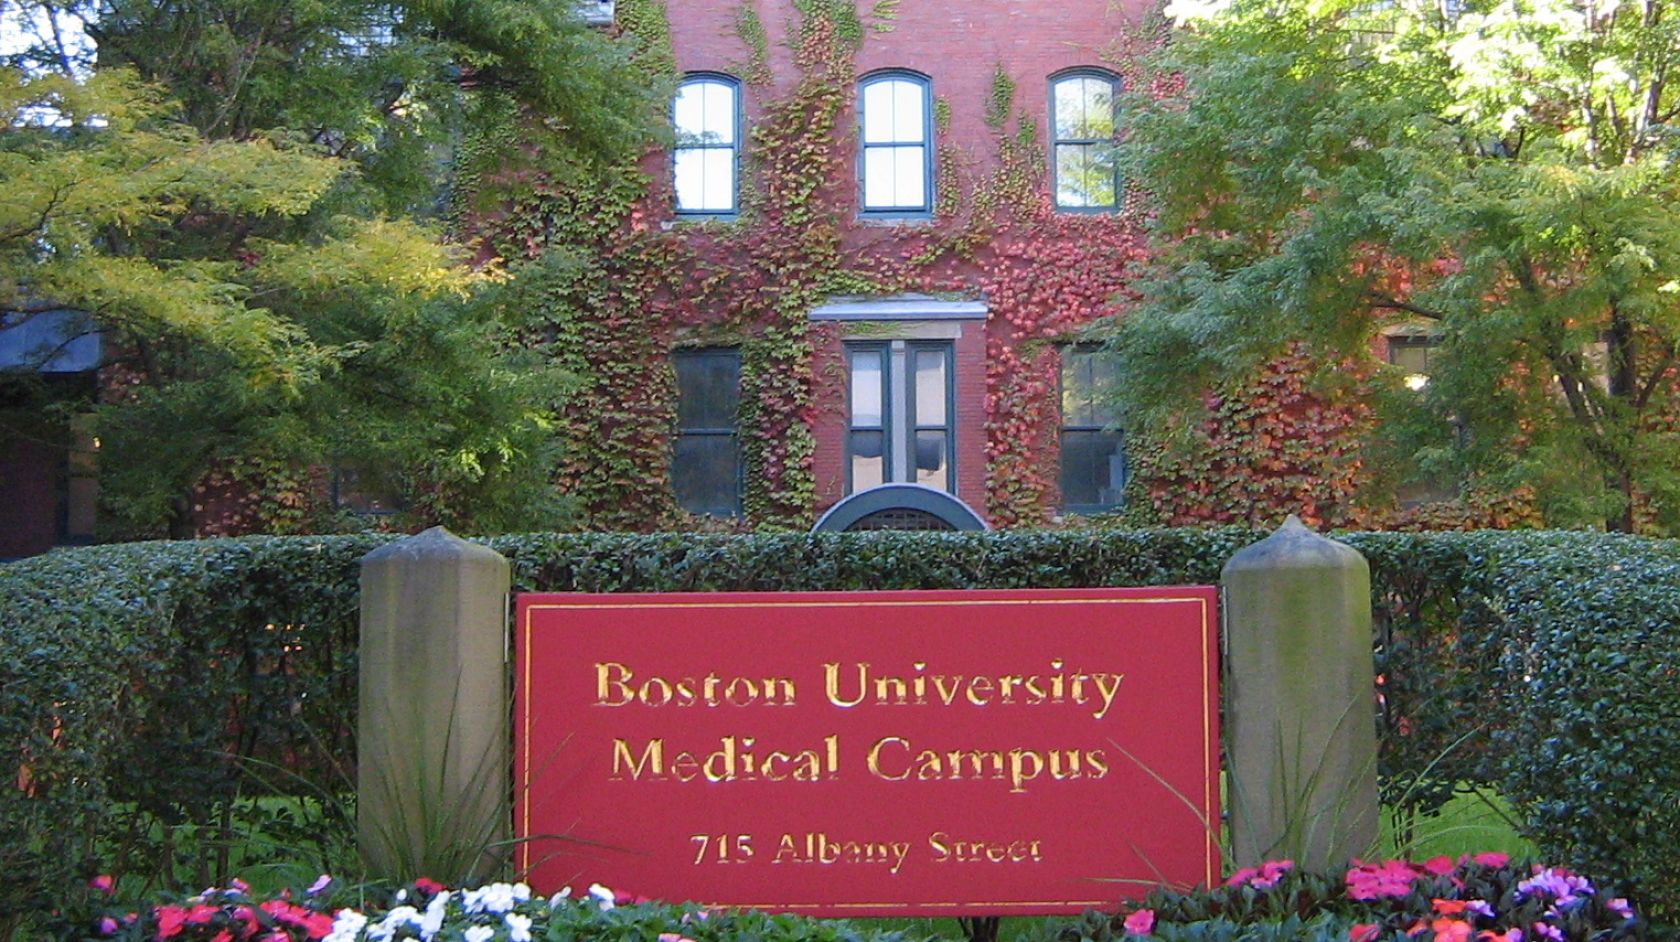 Boston University medical campus exterior